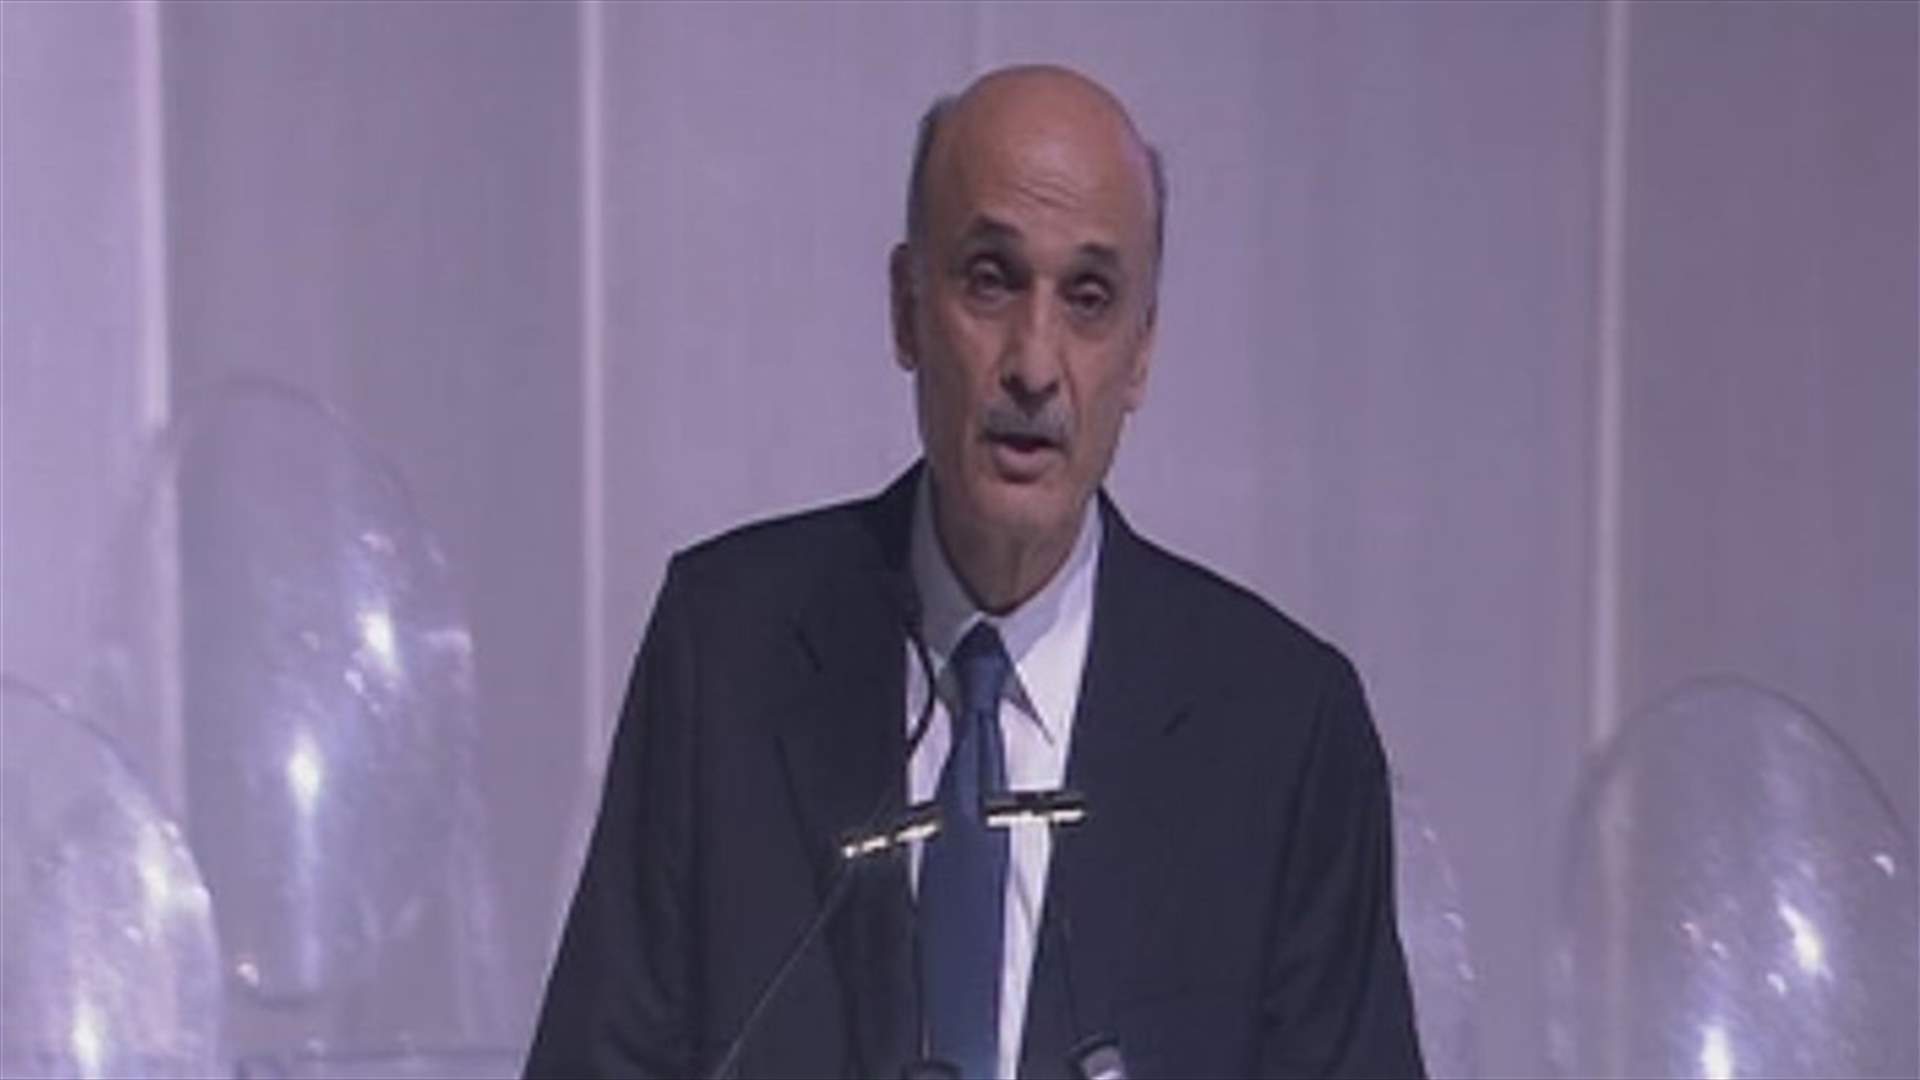 Geagea calls on Aoun to save his era, urges Hezbollah to return to Lebanon